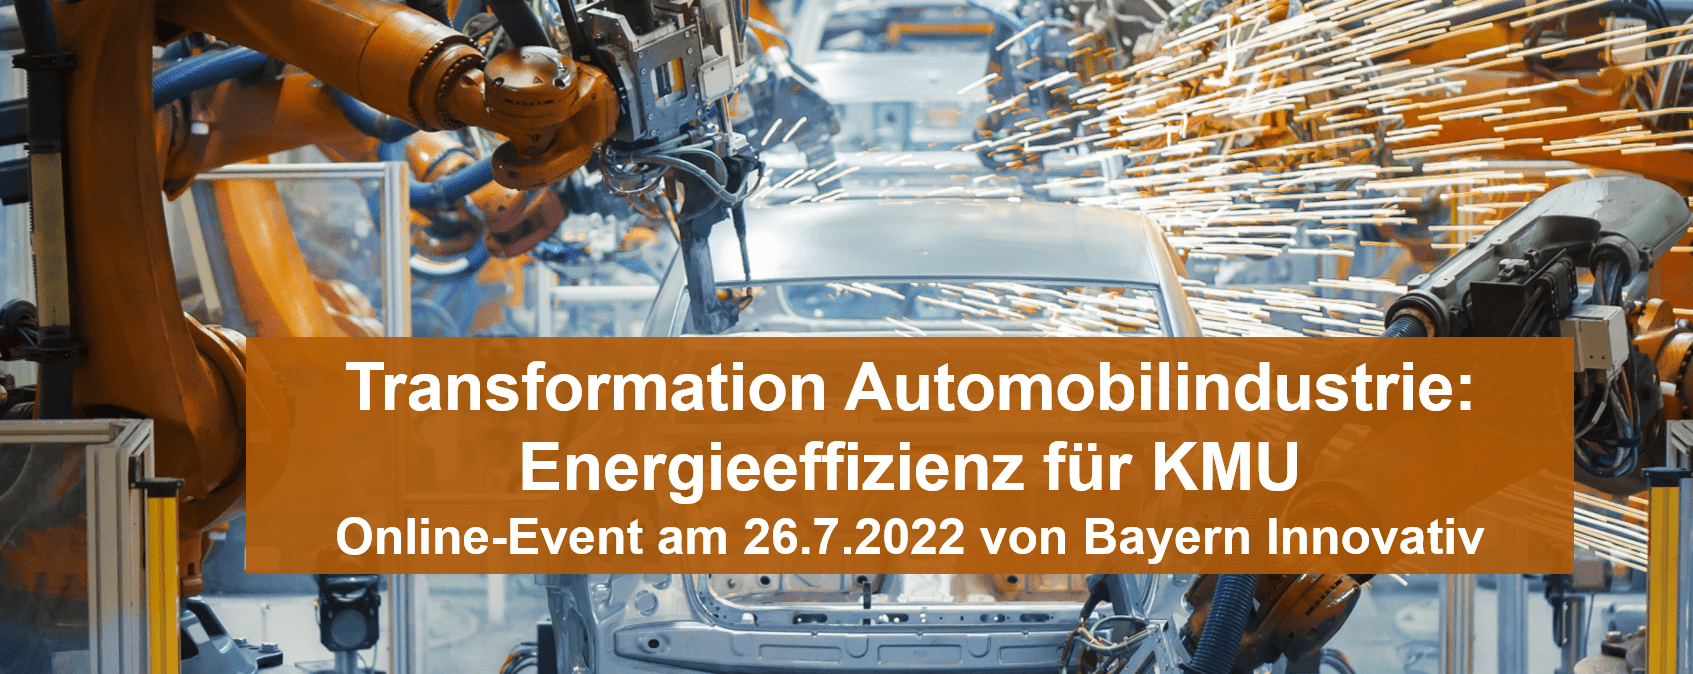 Energieeffizienz bei der Transformation Automobilindustrie – online-Event